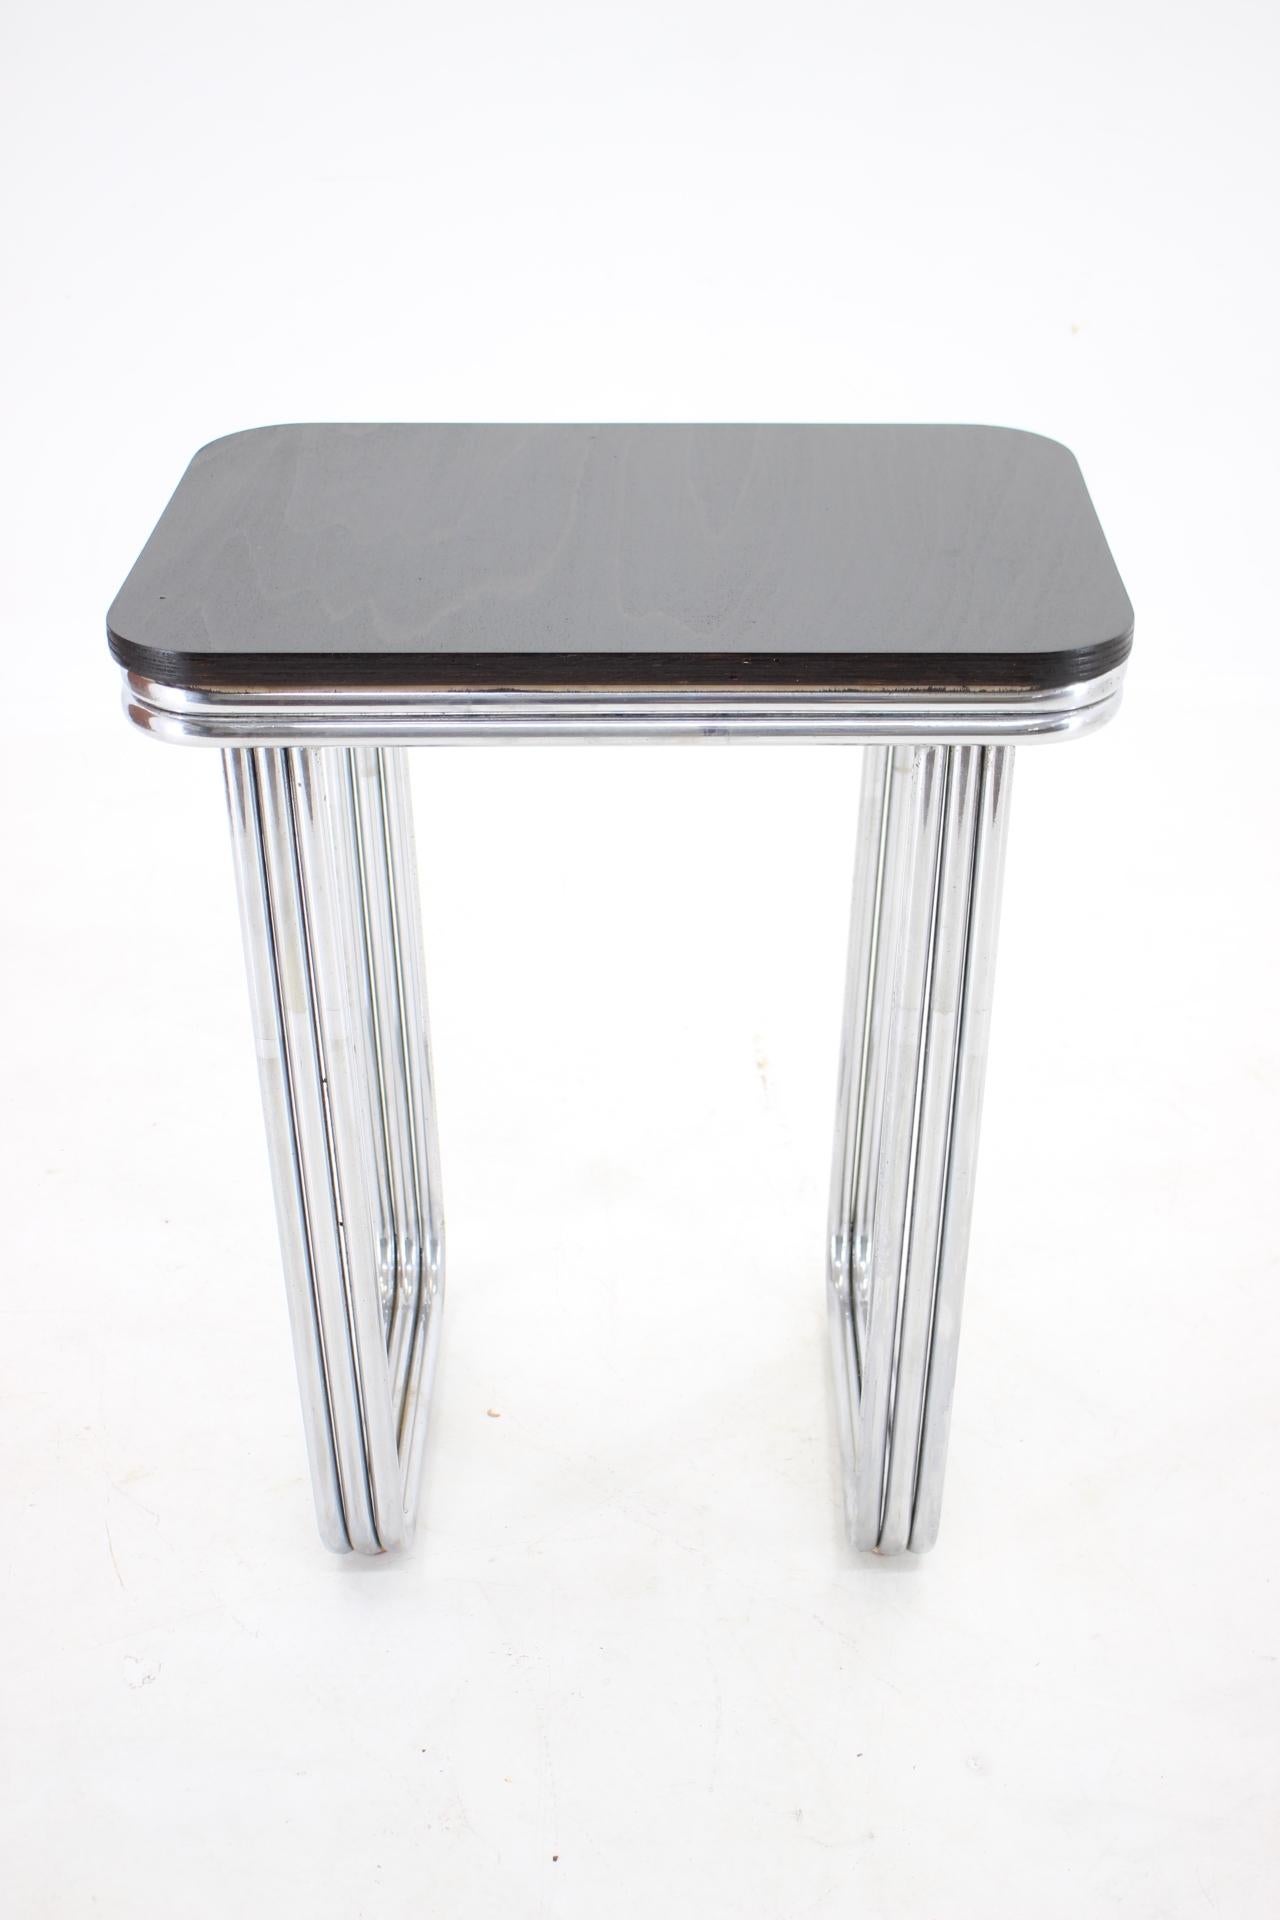 Chrome Bauhaus Art Deco Tubular Steel Chrom Table, 1930s For Sale